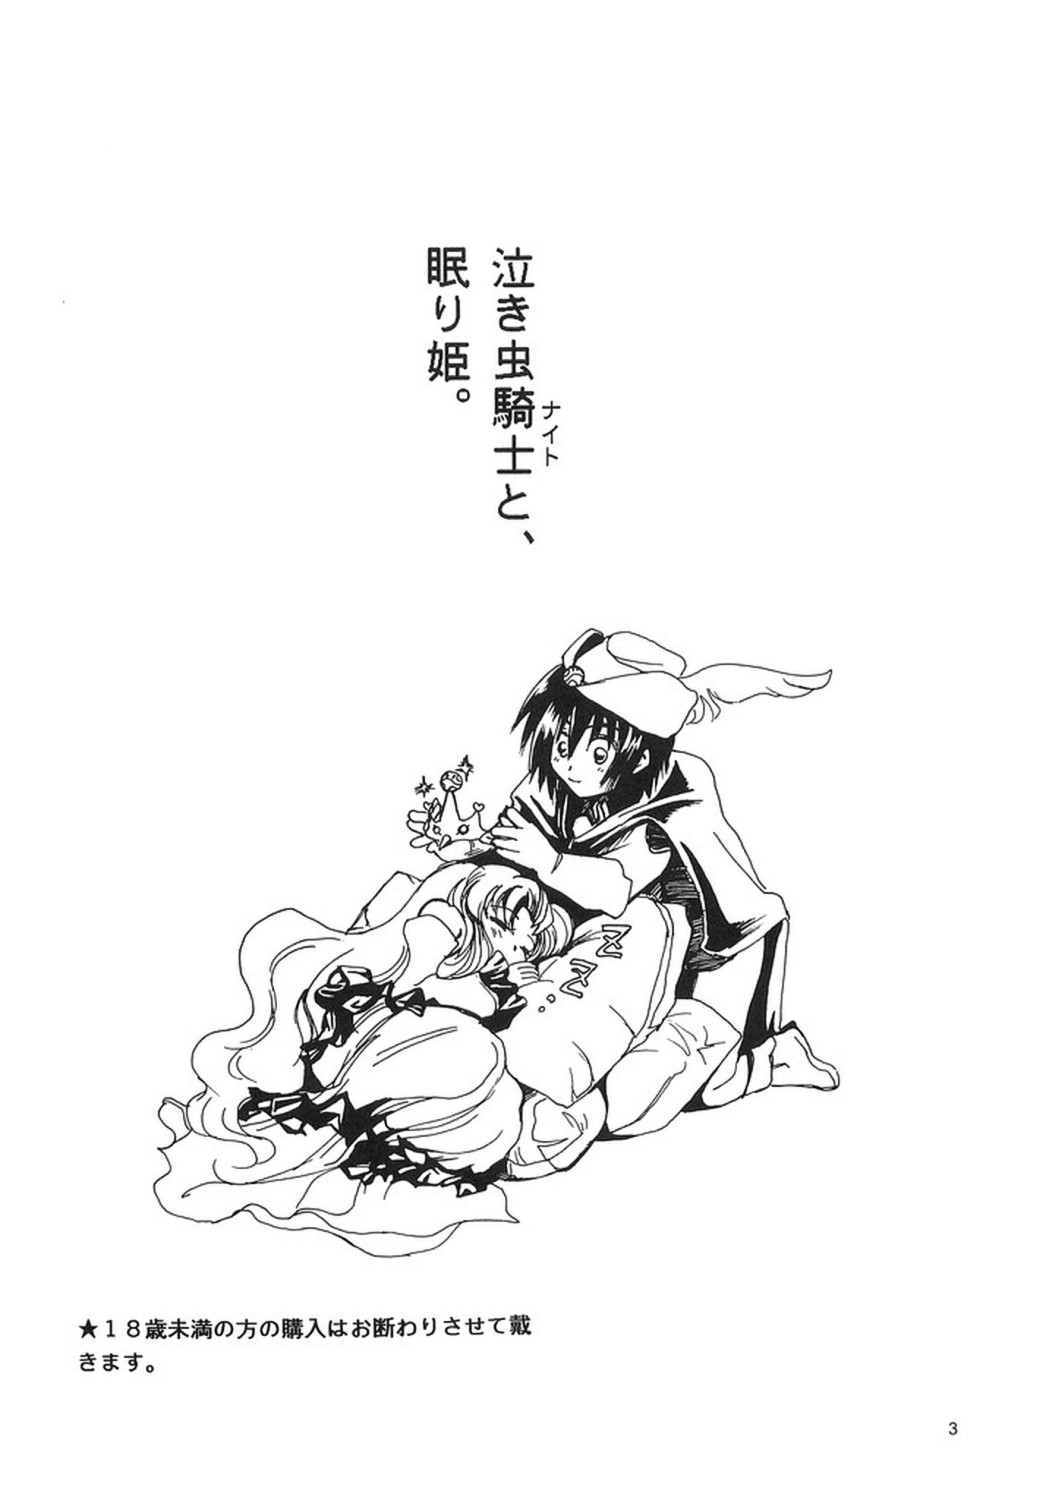 [裏夢や出版部] 泣き虫騎士と、眠り姫。 (機動戦士ガンダムSEED)